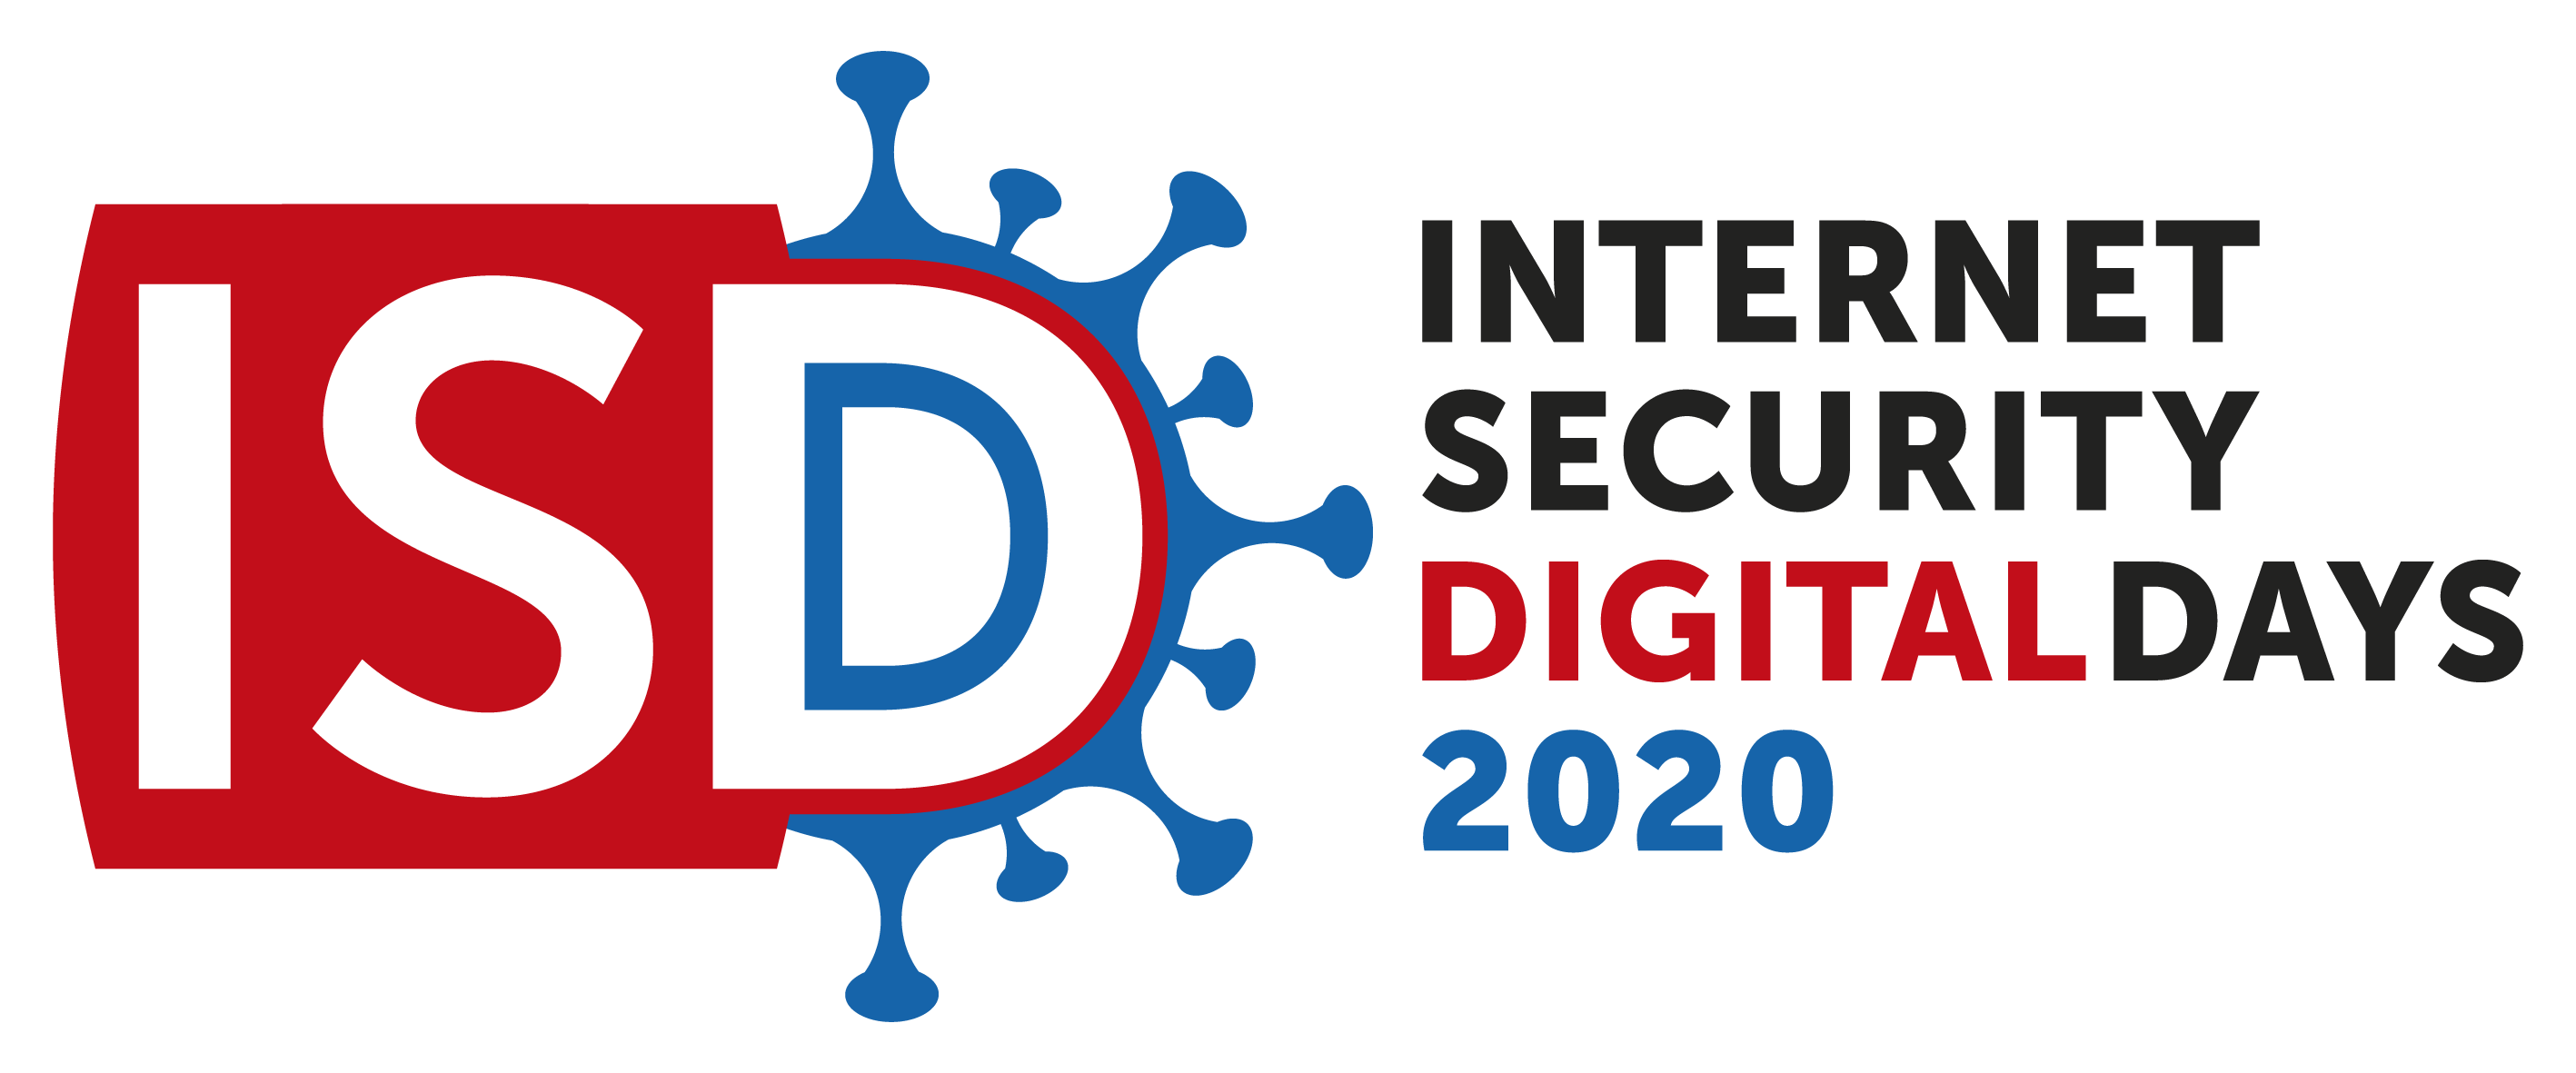 Logo Internet Security Digital Days 2020